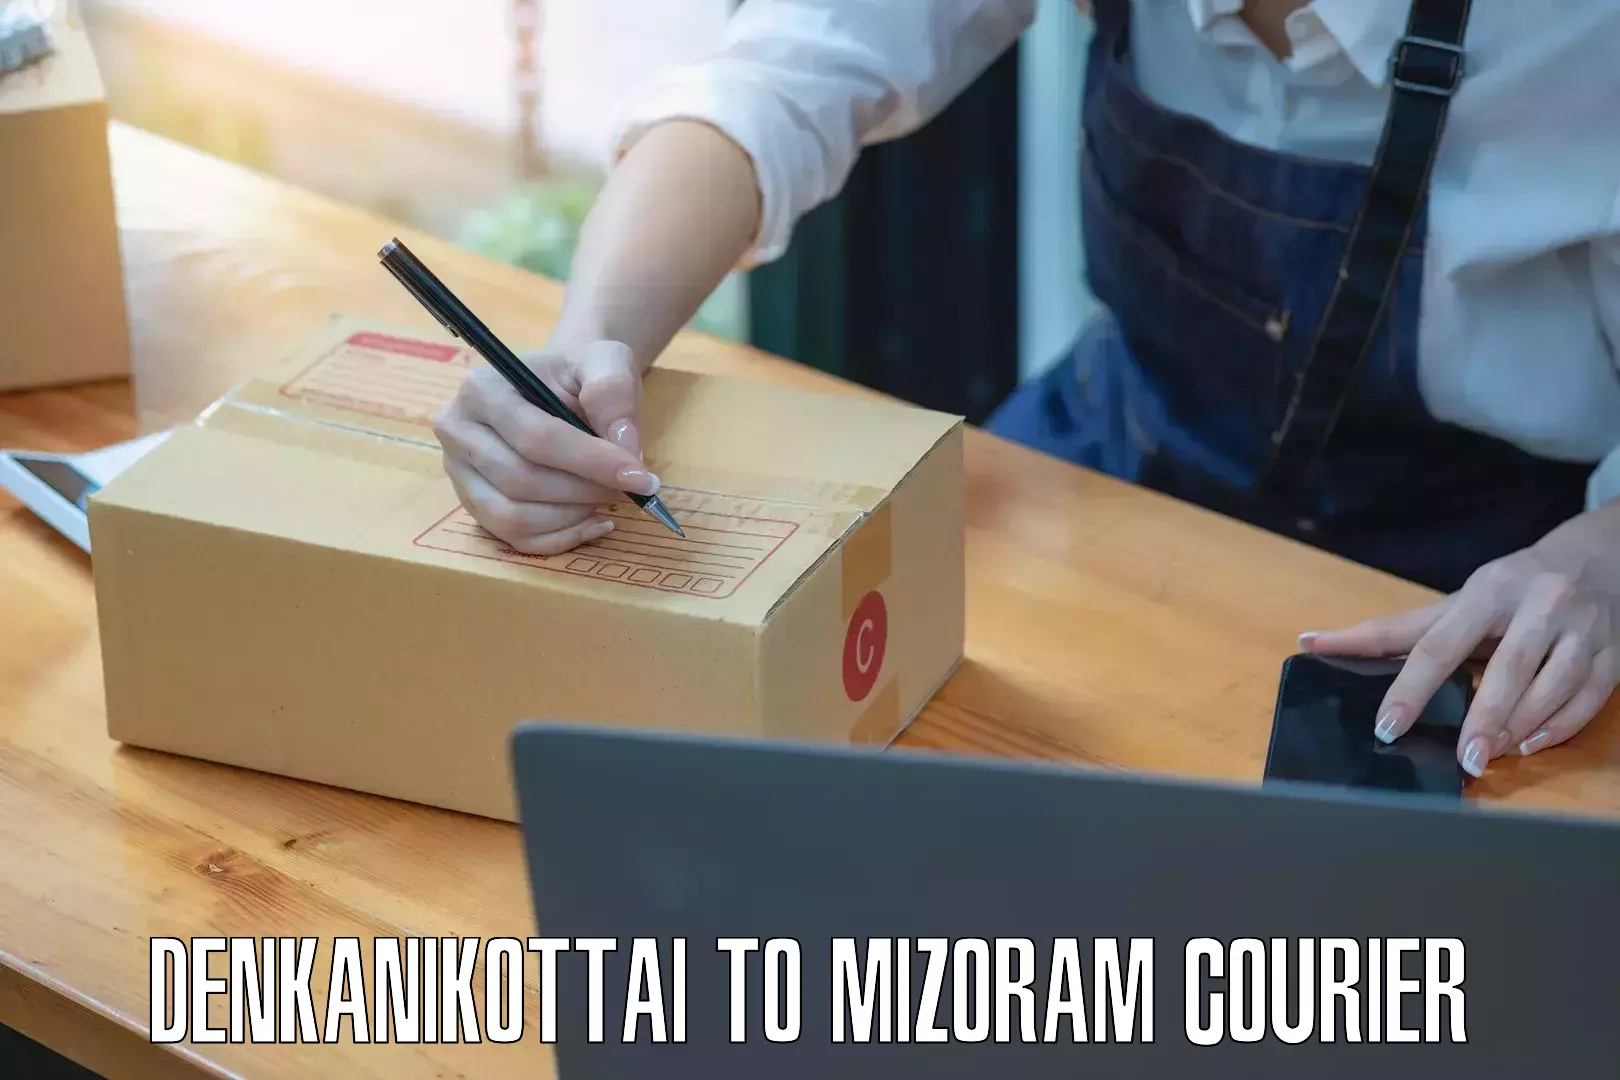 On-call courier service Denkanikottai to Mizoram